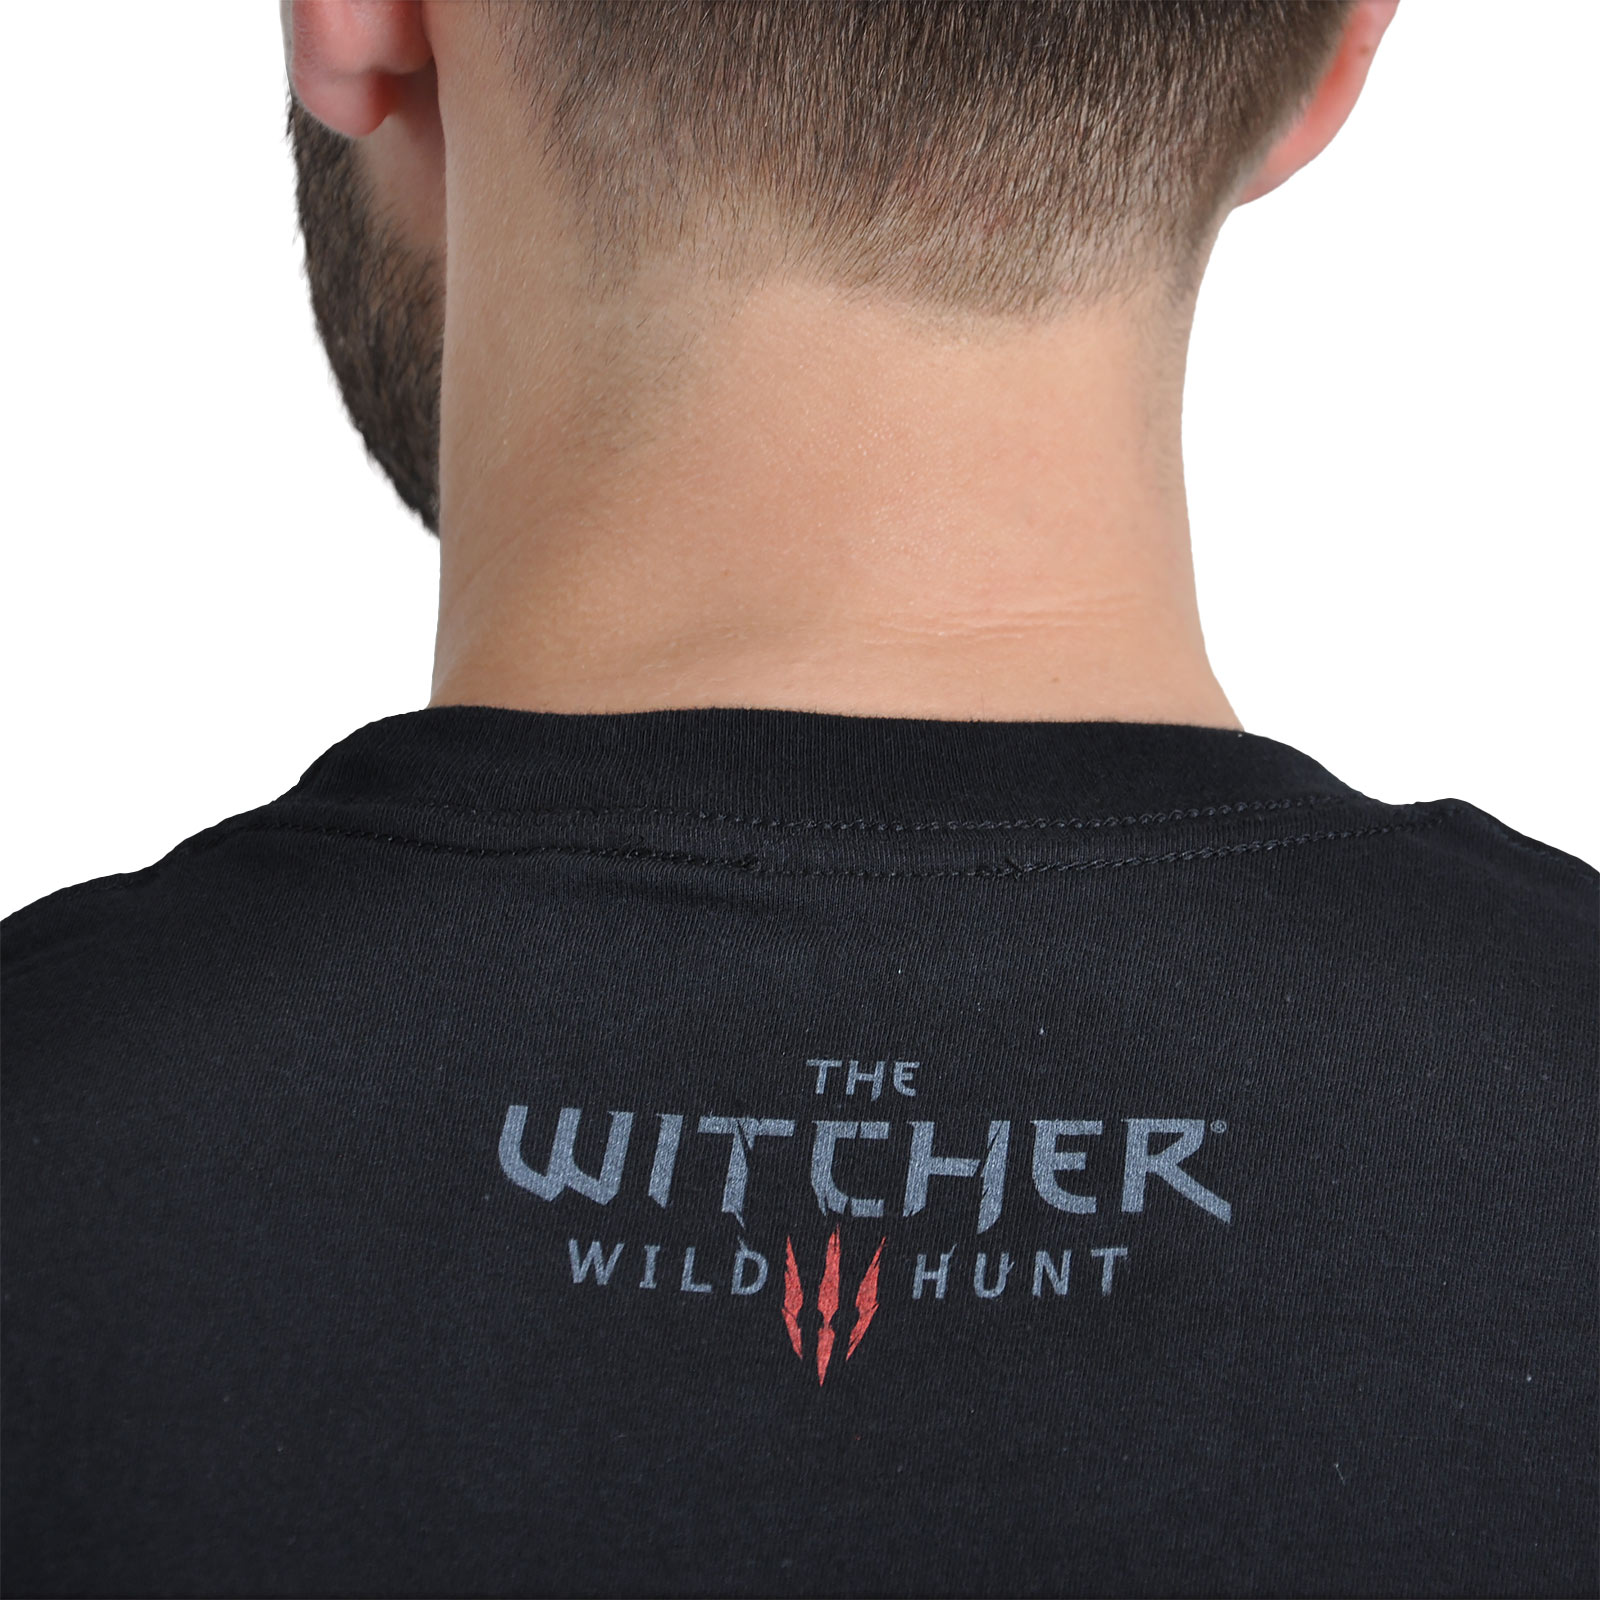 Witcher - T-shirt Eredin noir